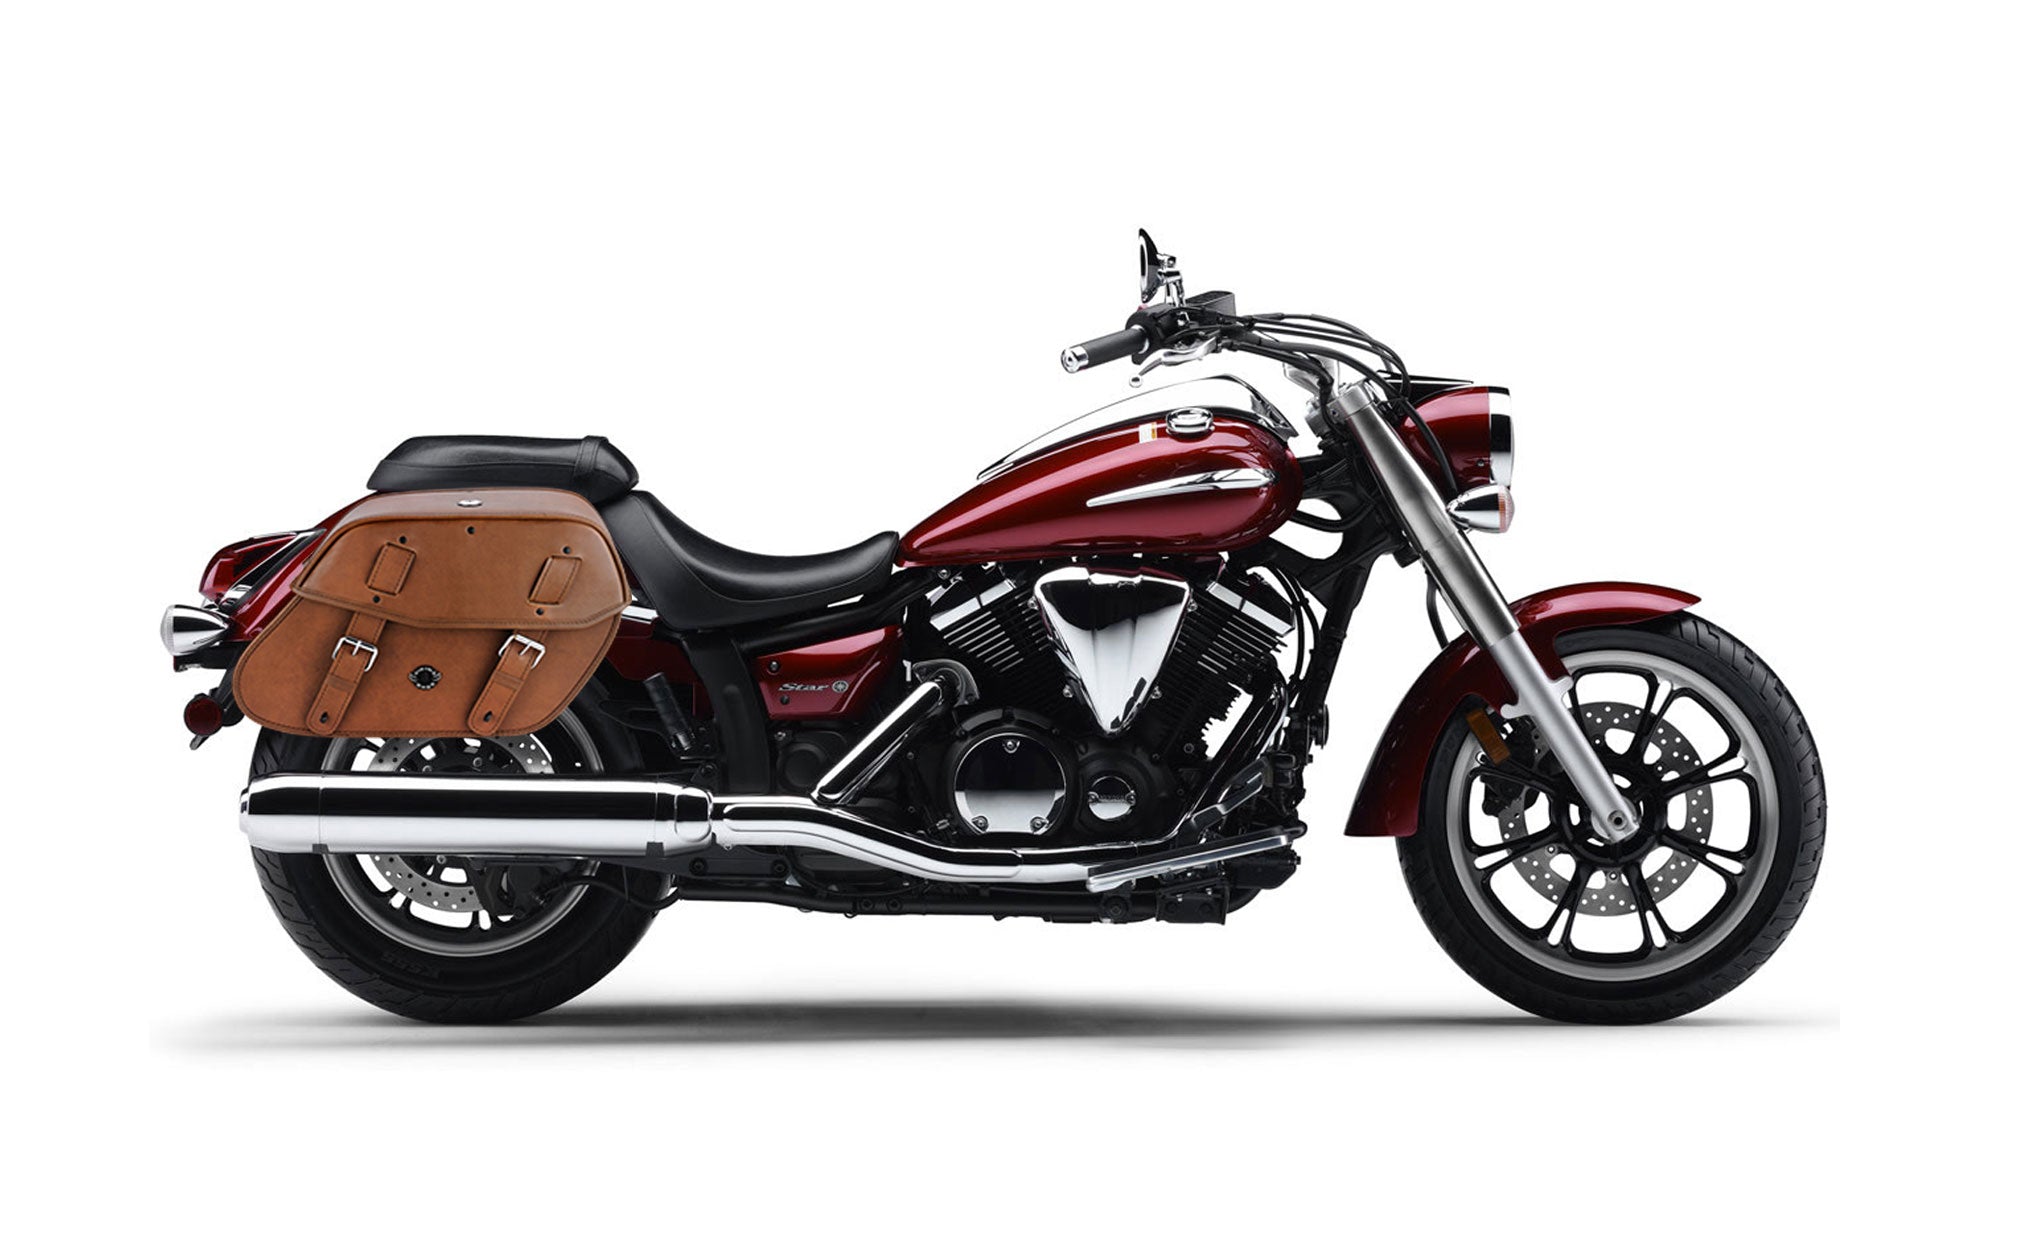 Viking Odin Brown Large Yamaha V Star 950 Leather Motorcycle Saddlebags on Bike Photo @expand